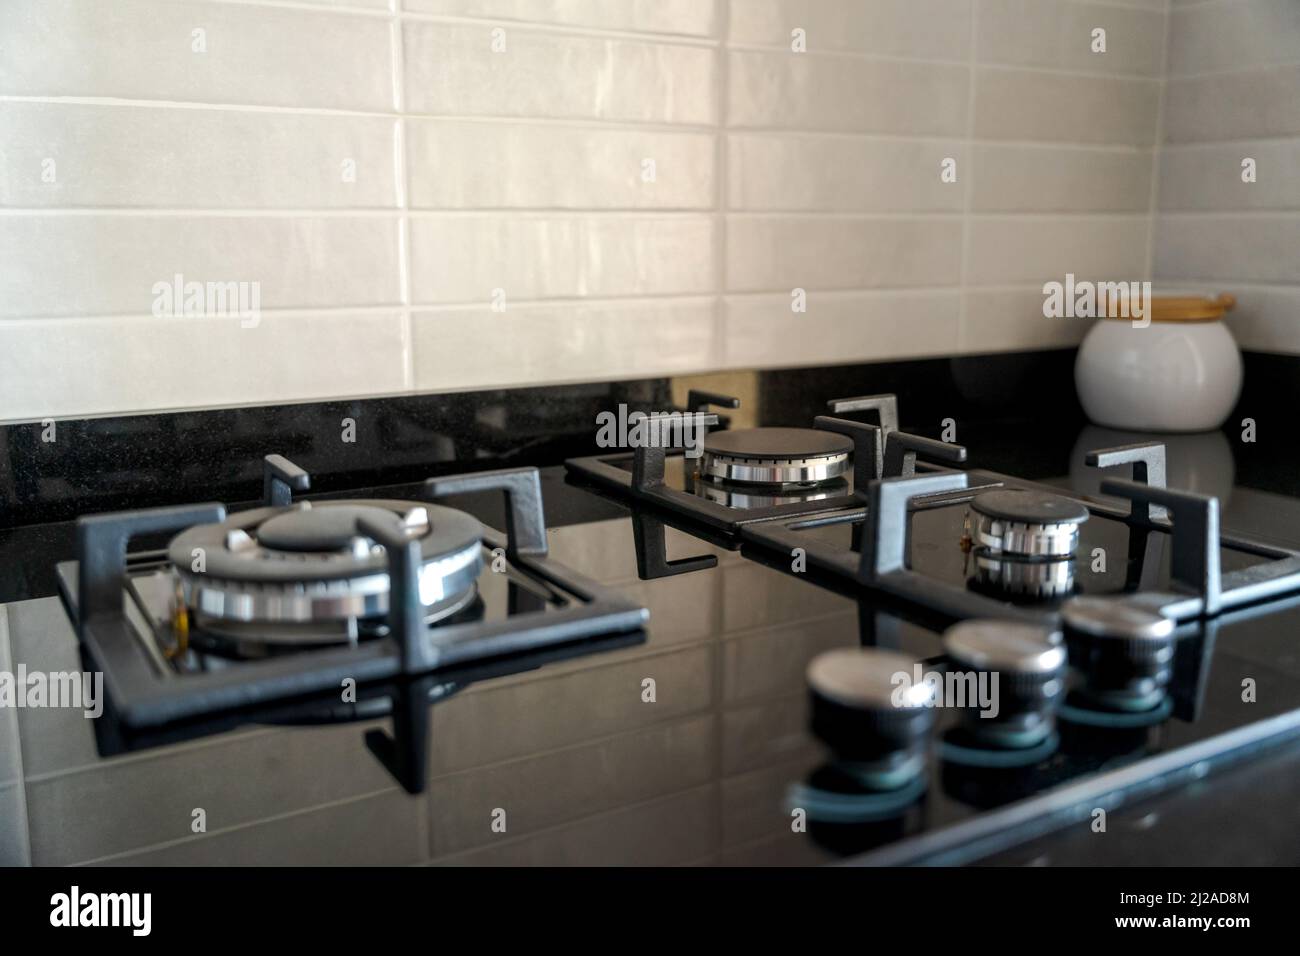 Gros plan de la cuisinière de cuisine. Tables de cuisson à gaz noires en marbre noir. Banque D'Images